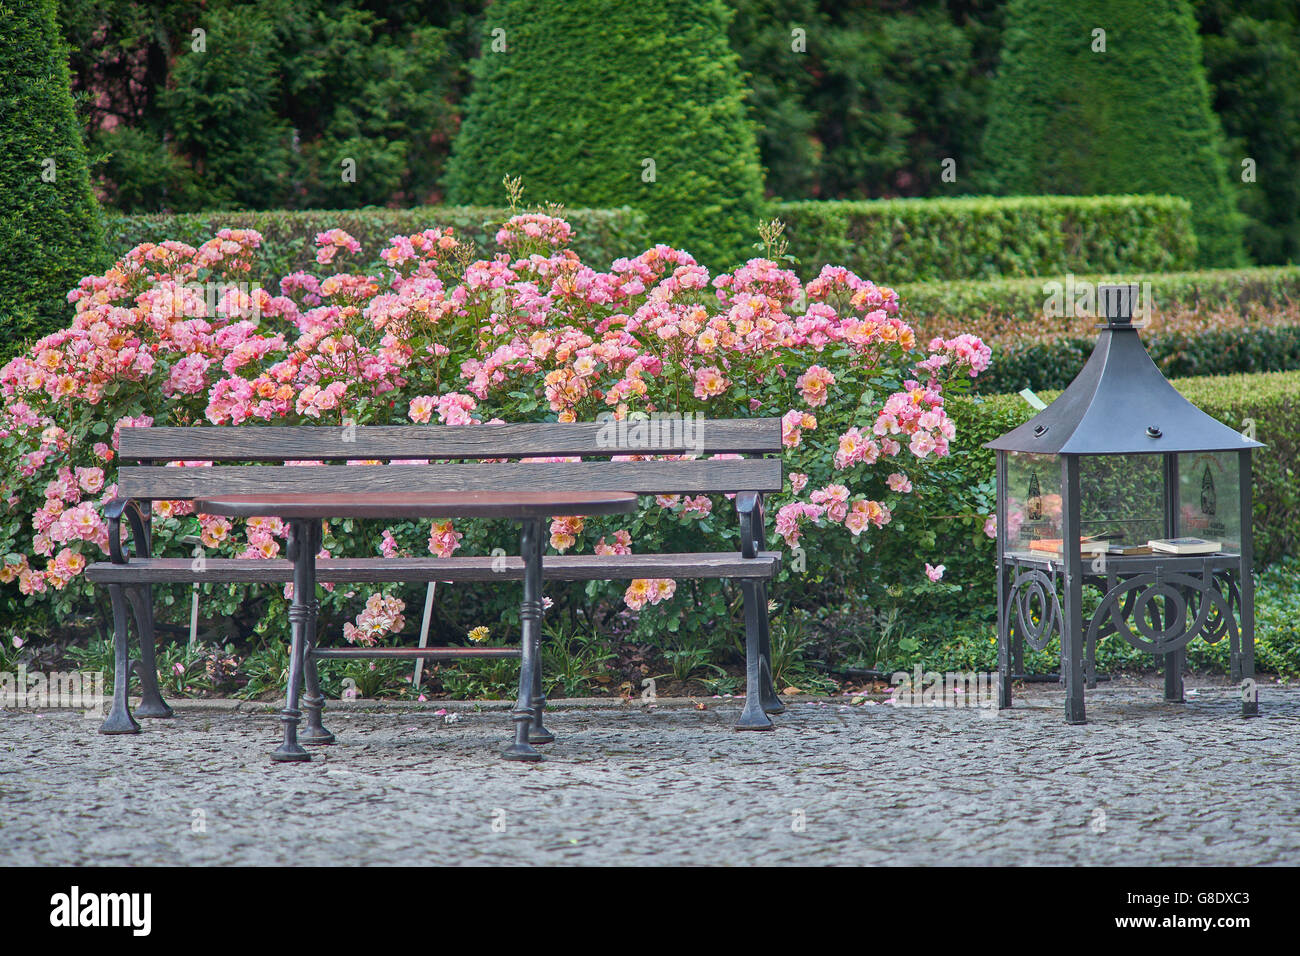 Banc et table avec des rosiers en fleurs derrière Banque D'Images